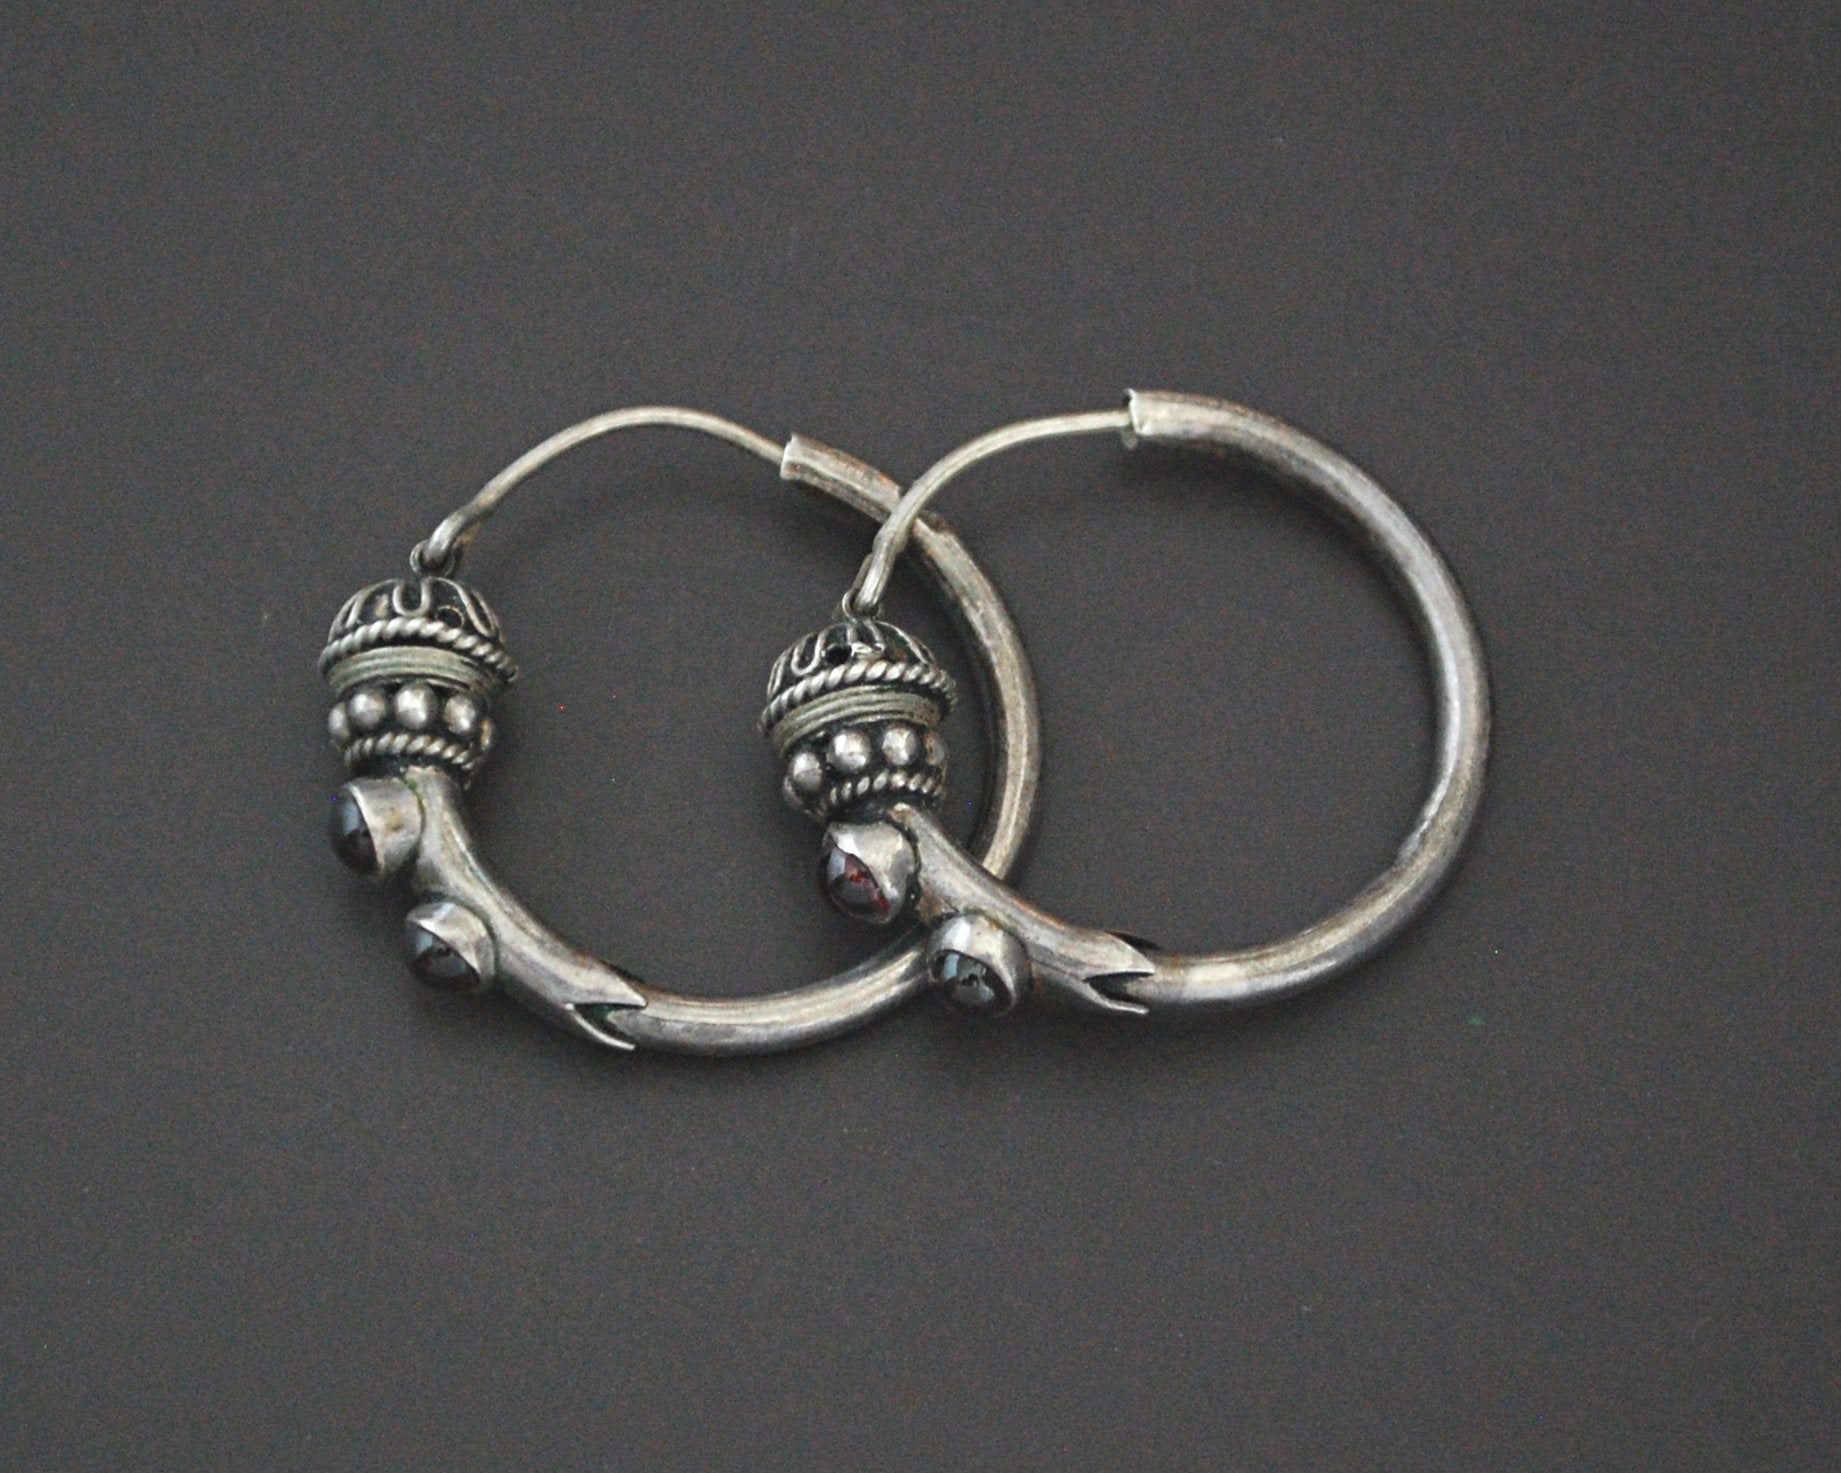 Ethnic Bali Hoop Earrings with Garnet